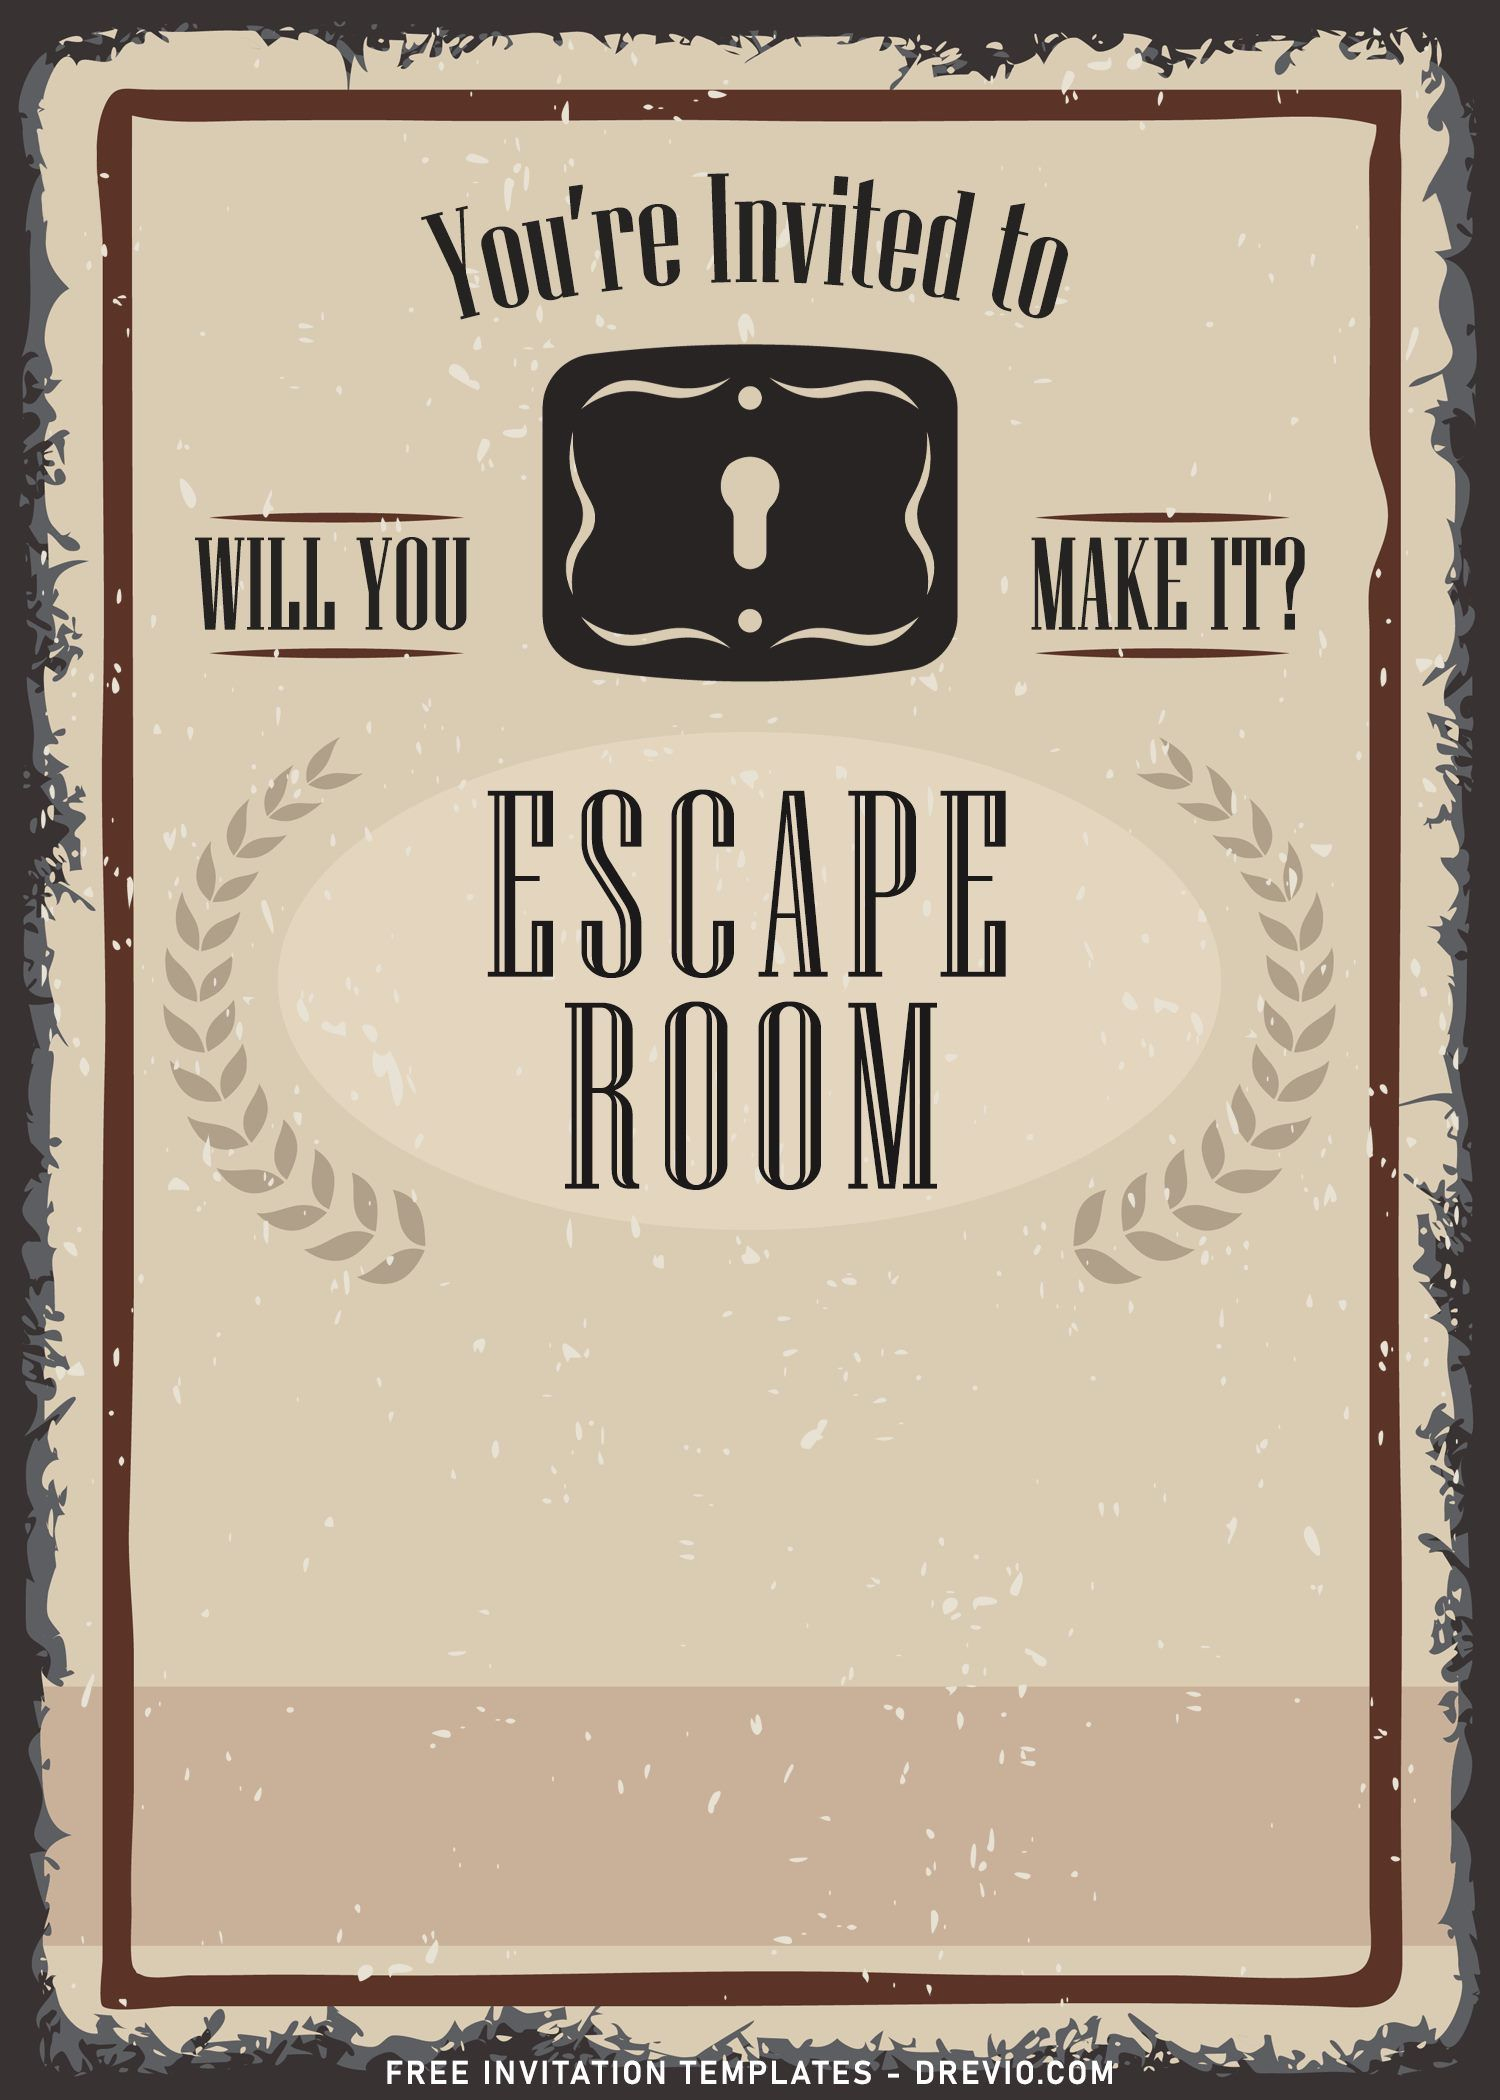 8+ Fun Riddles Escape Room Birthday Invitation Templates - Free Printable Escape Room Invitations